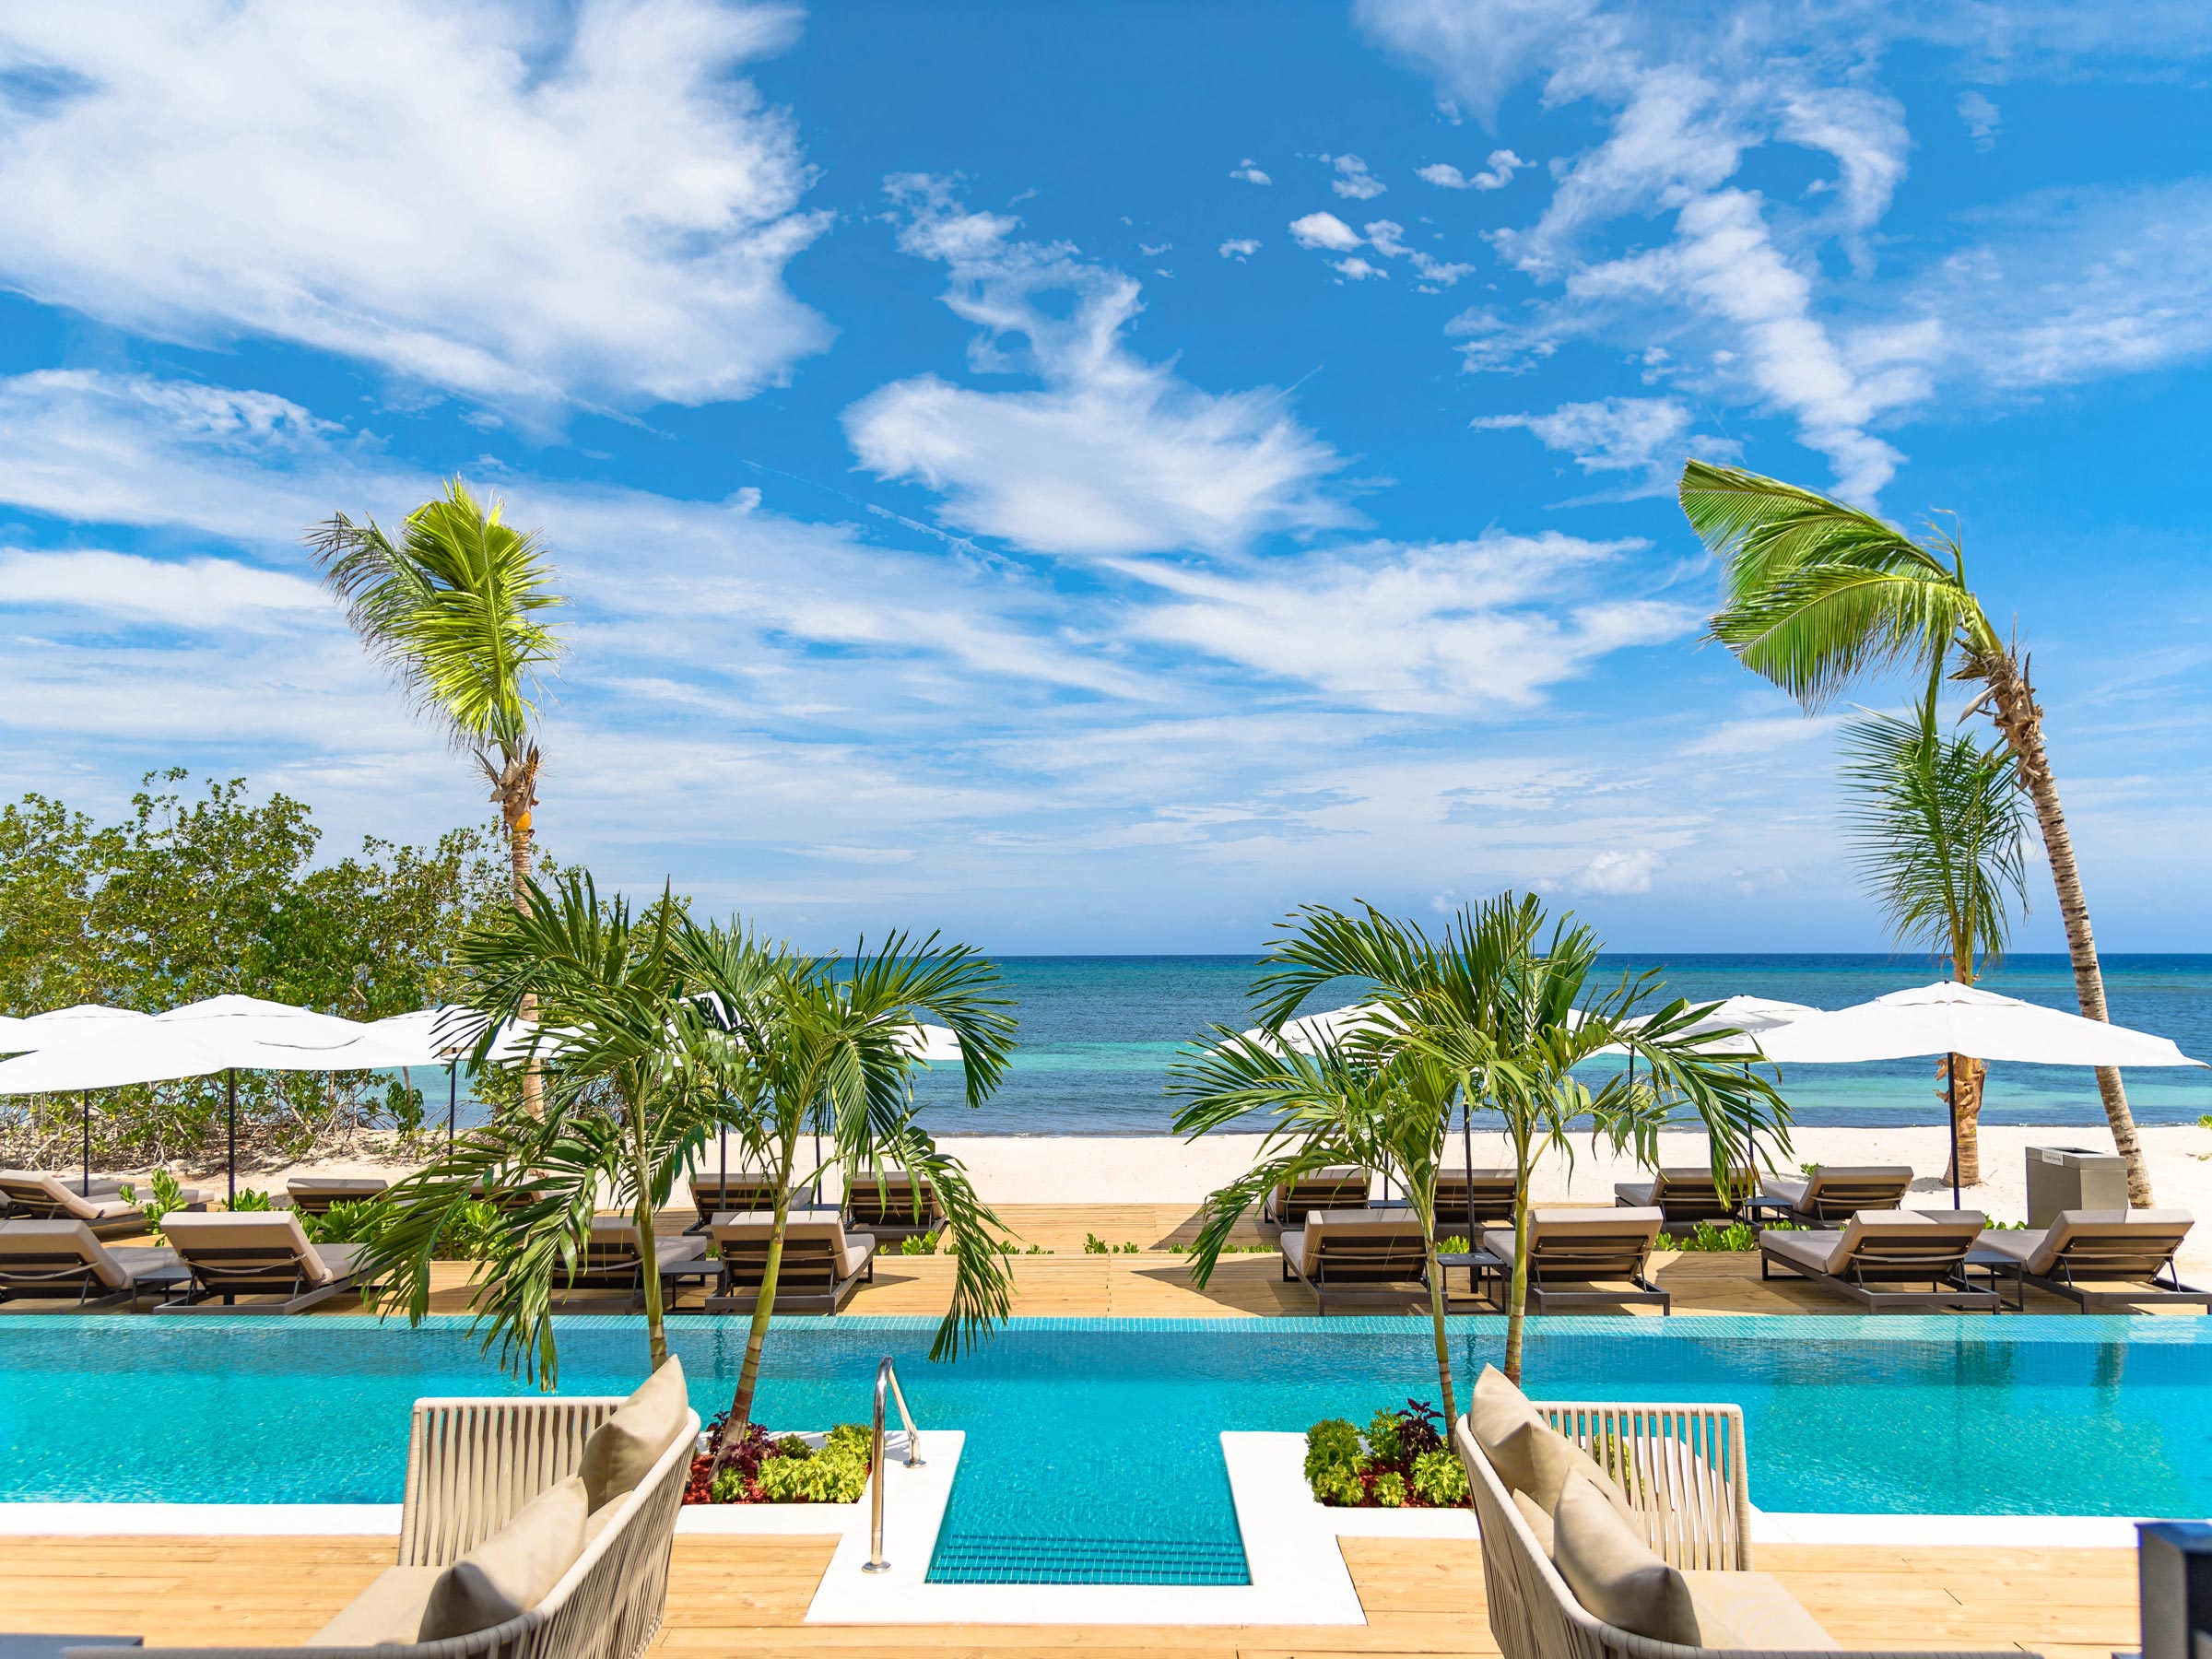 Relájese en la piscina del Excellence Club y disfrute de las vistas a la playa cuando se hospede en la suite Excellence Club Beachfront House